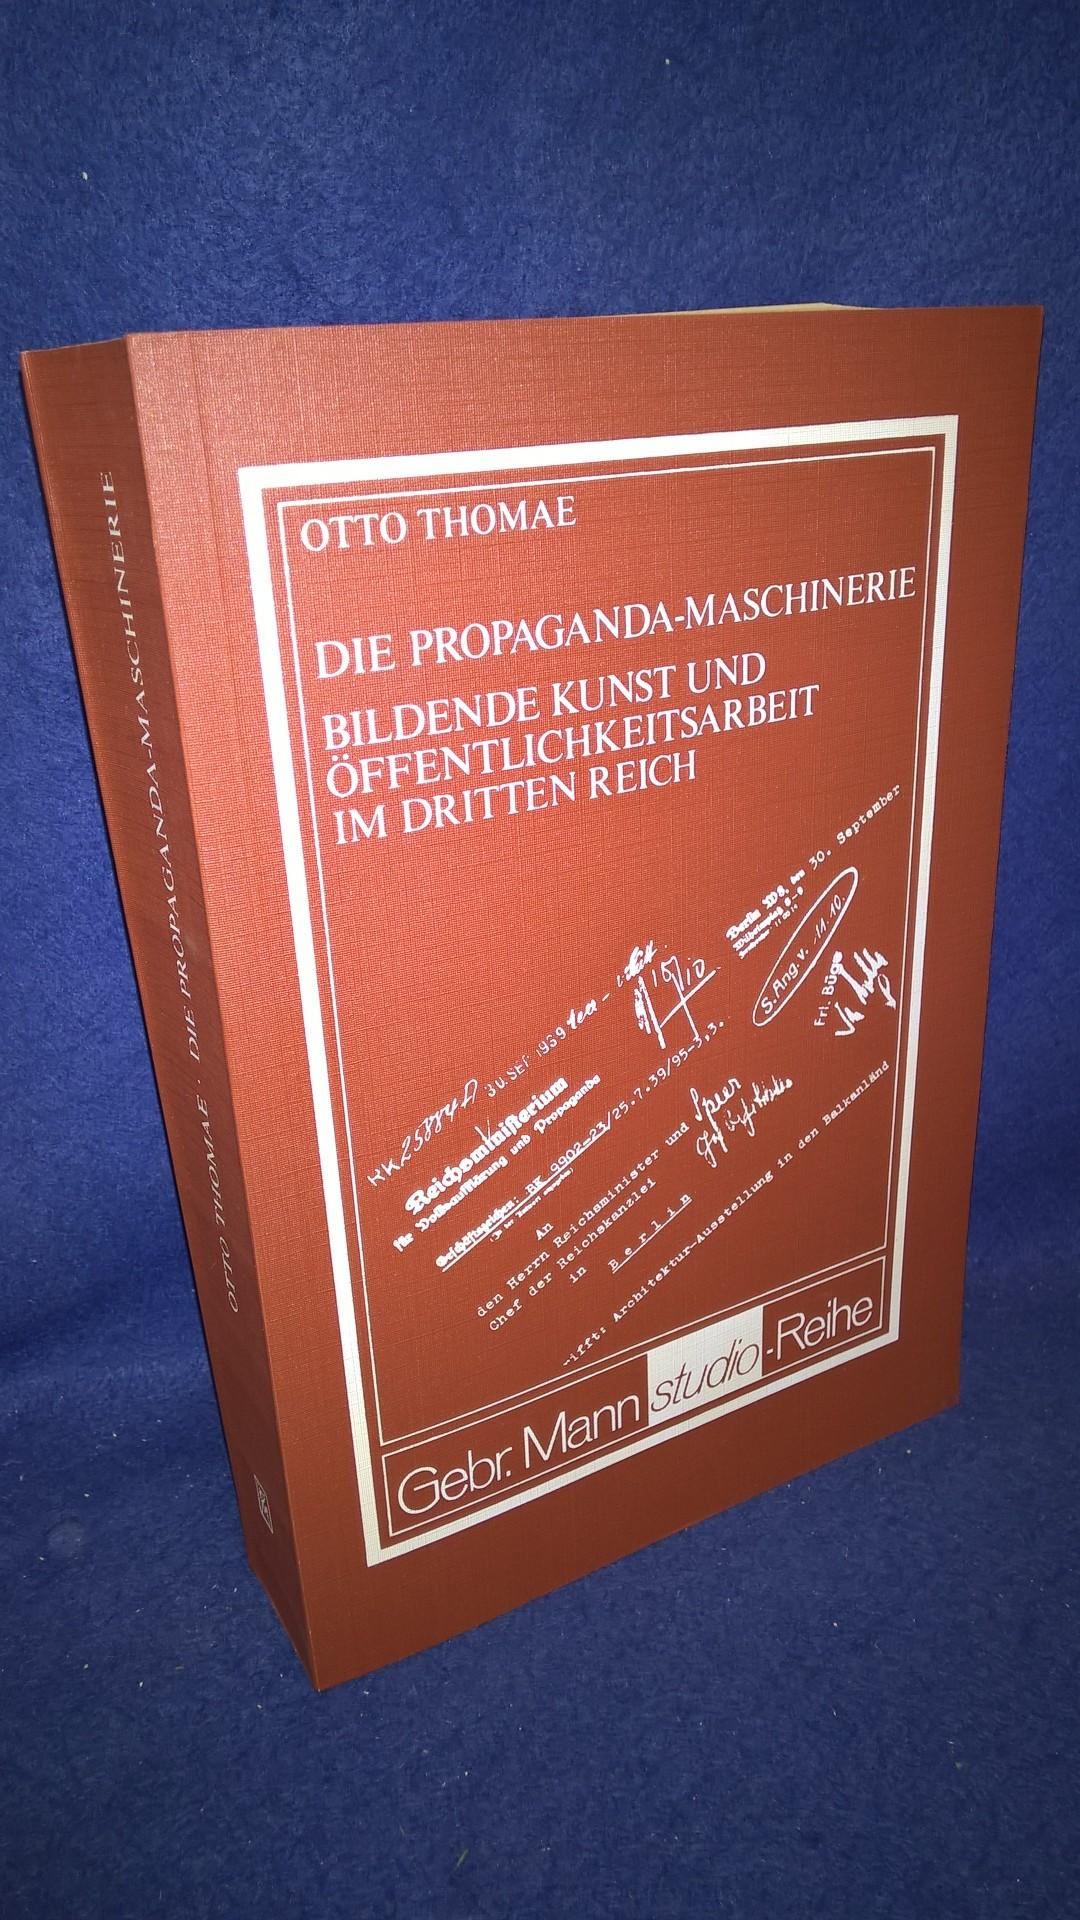 Die Propaganda-Maschinerie.  Bildende Kunst und Öffentlichkeitsarbeit im Dritten Reich. 